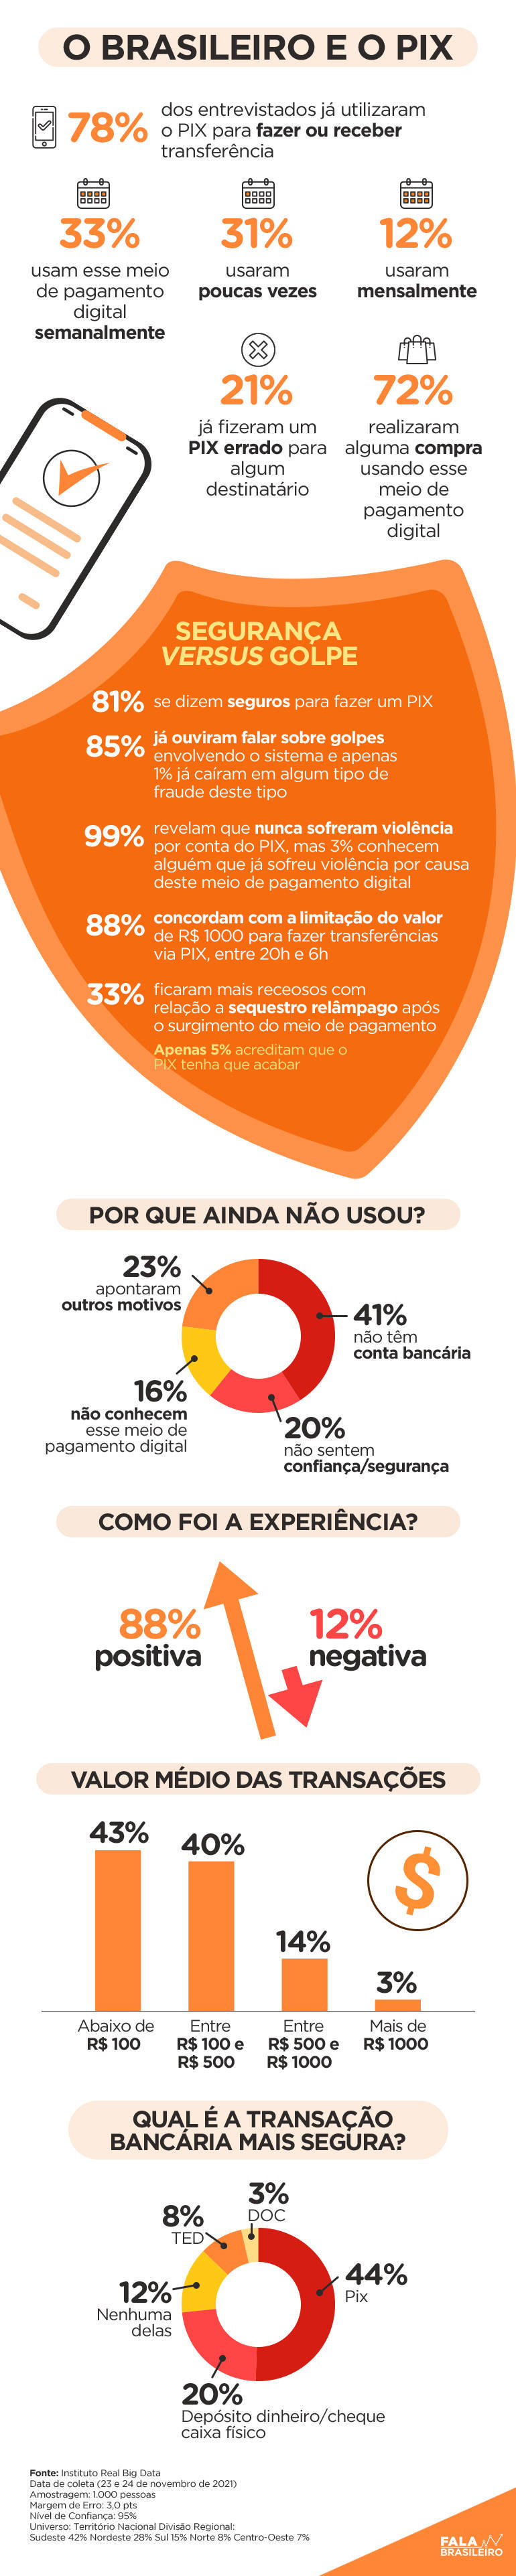 Estudo do Instituto Real Big Data mostra a relação entre o brasileiro e o pix